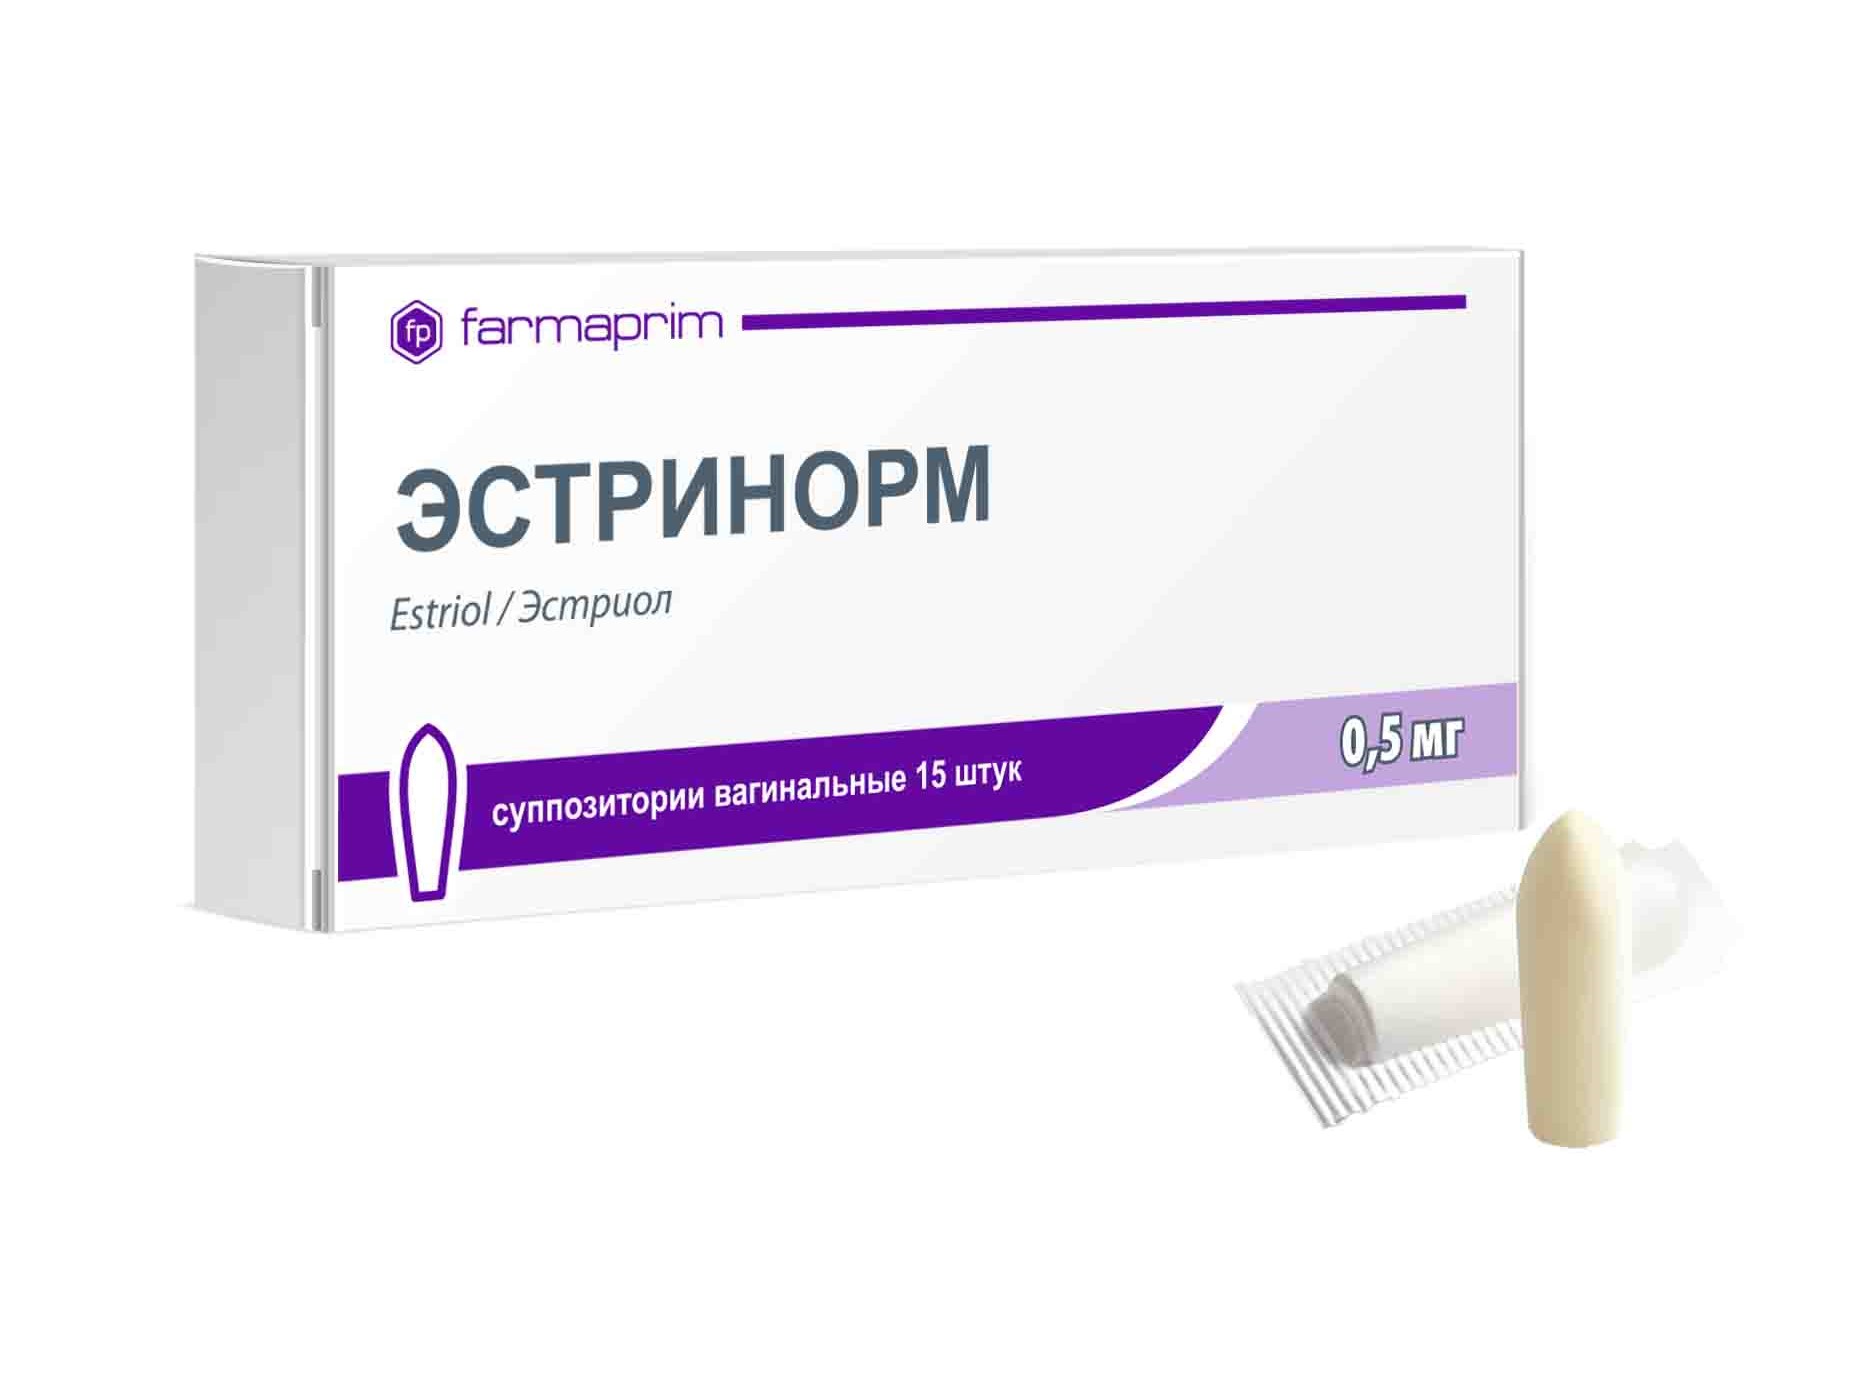 Эстринорм суппозитории вагин. 0,5мг упаковка №15